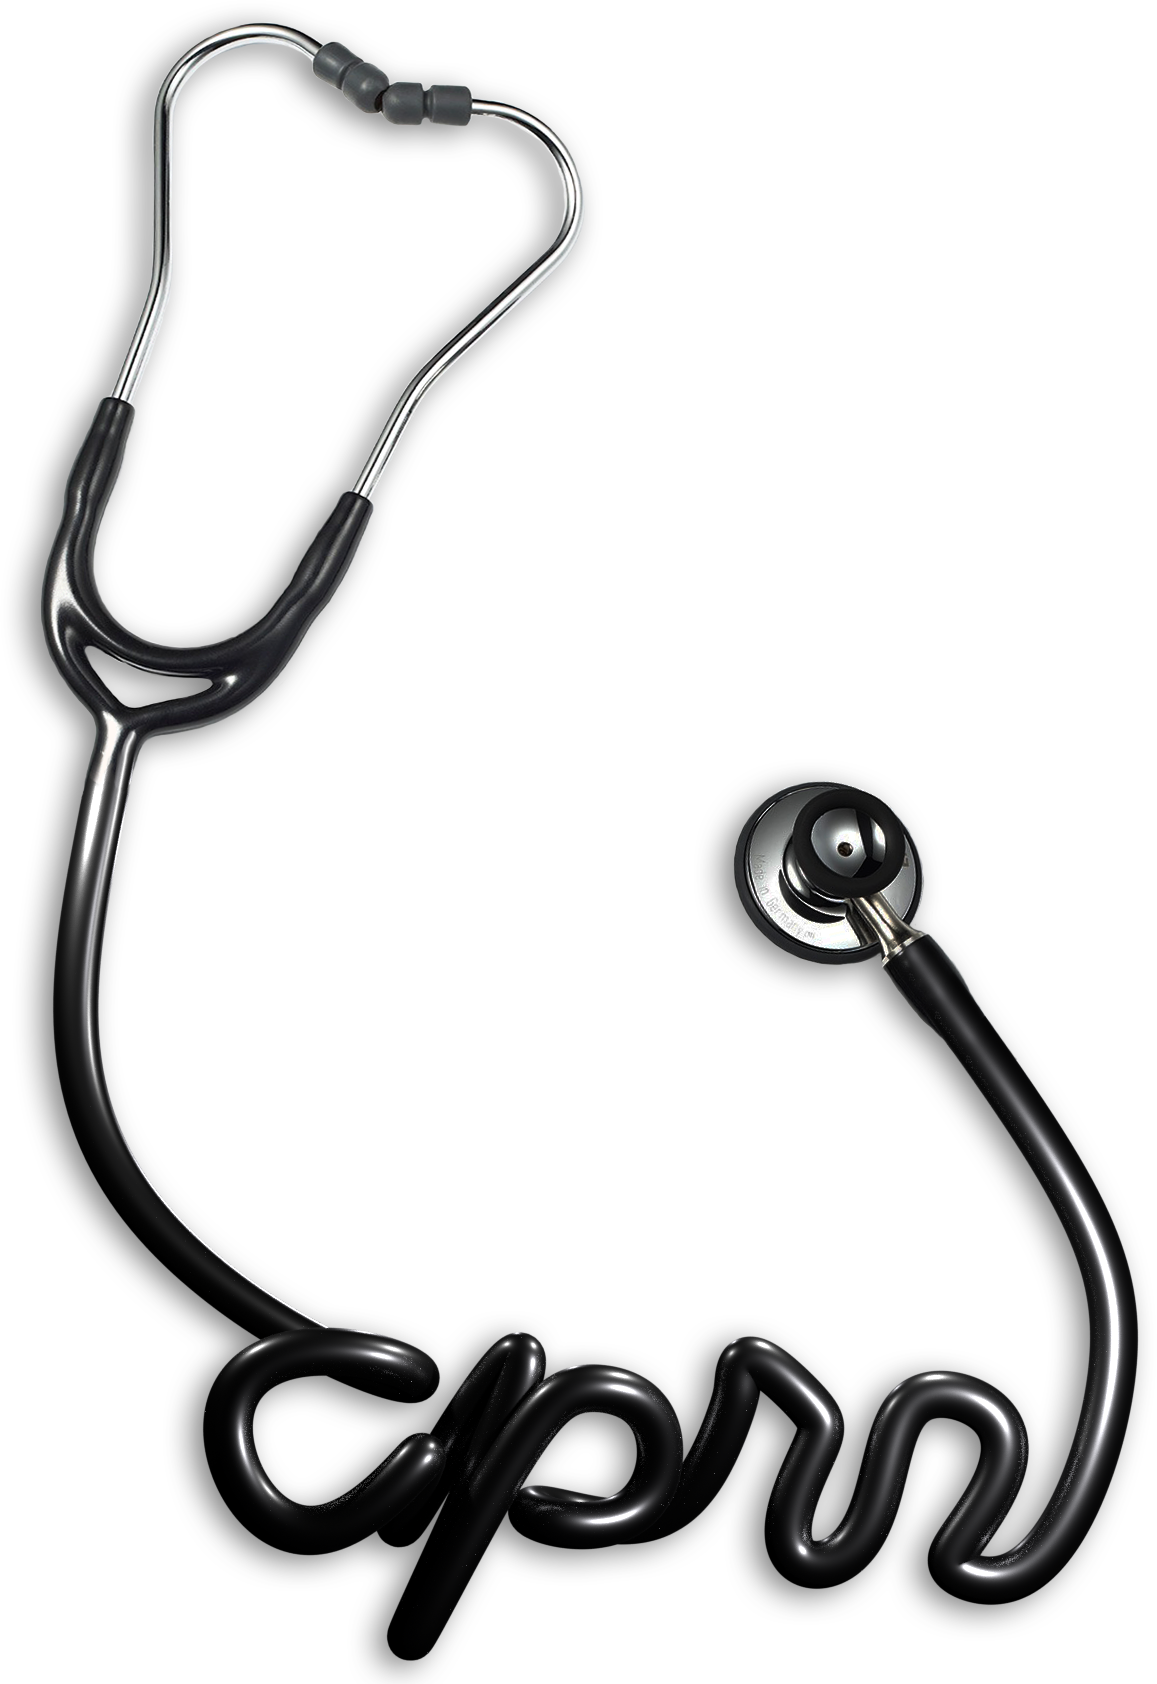 image of stethoscope